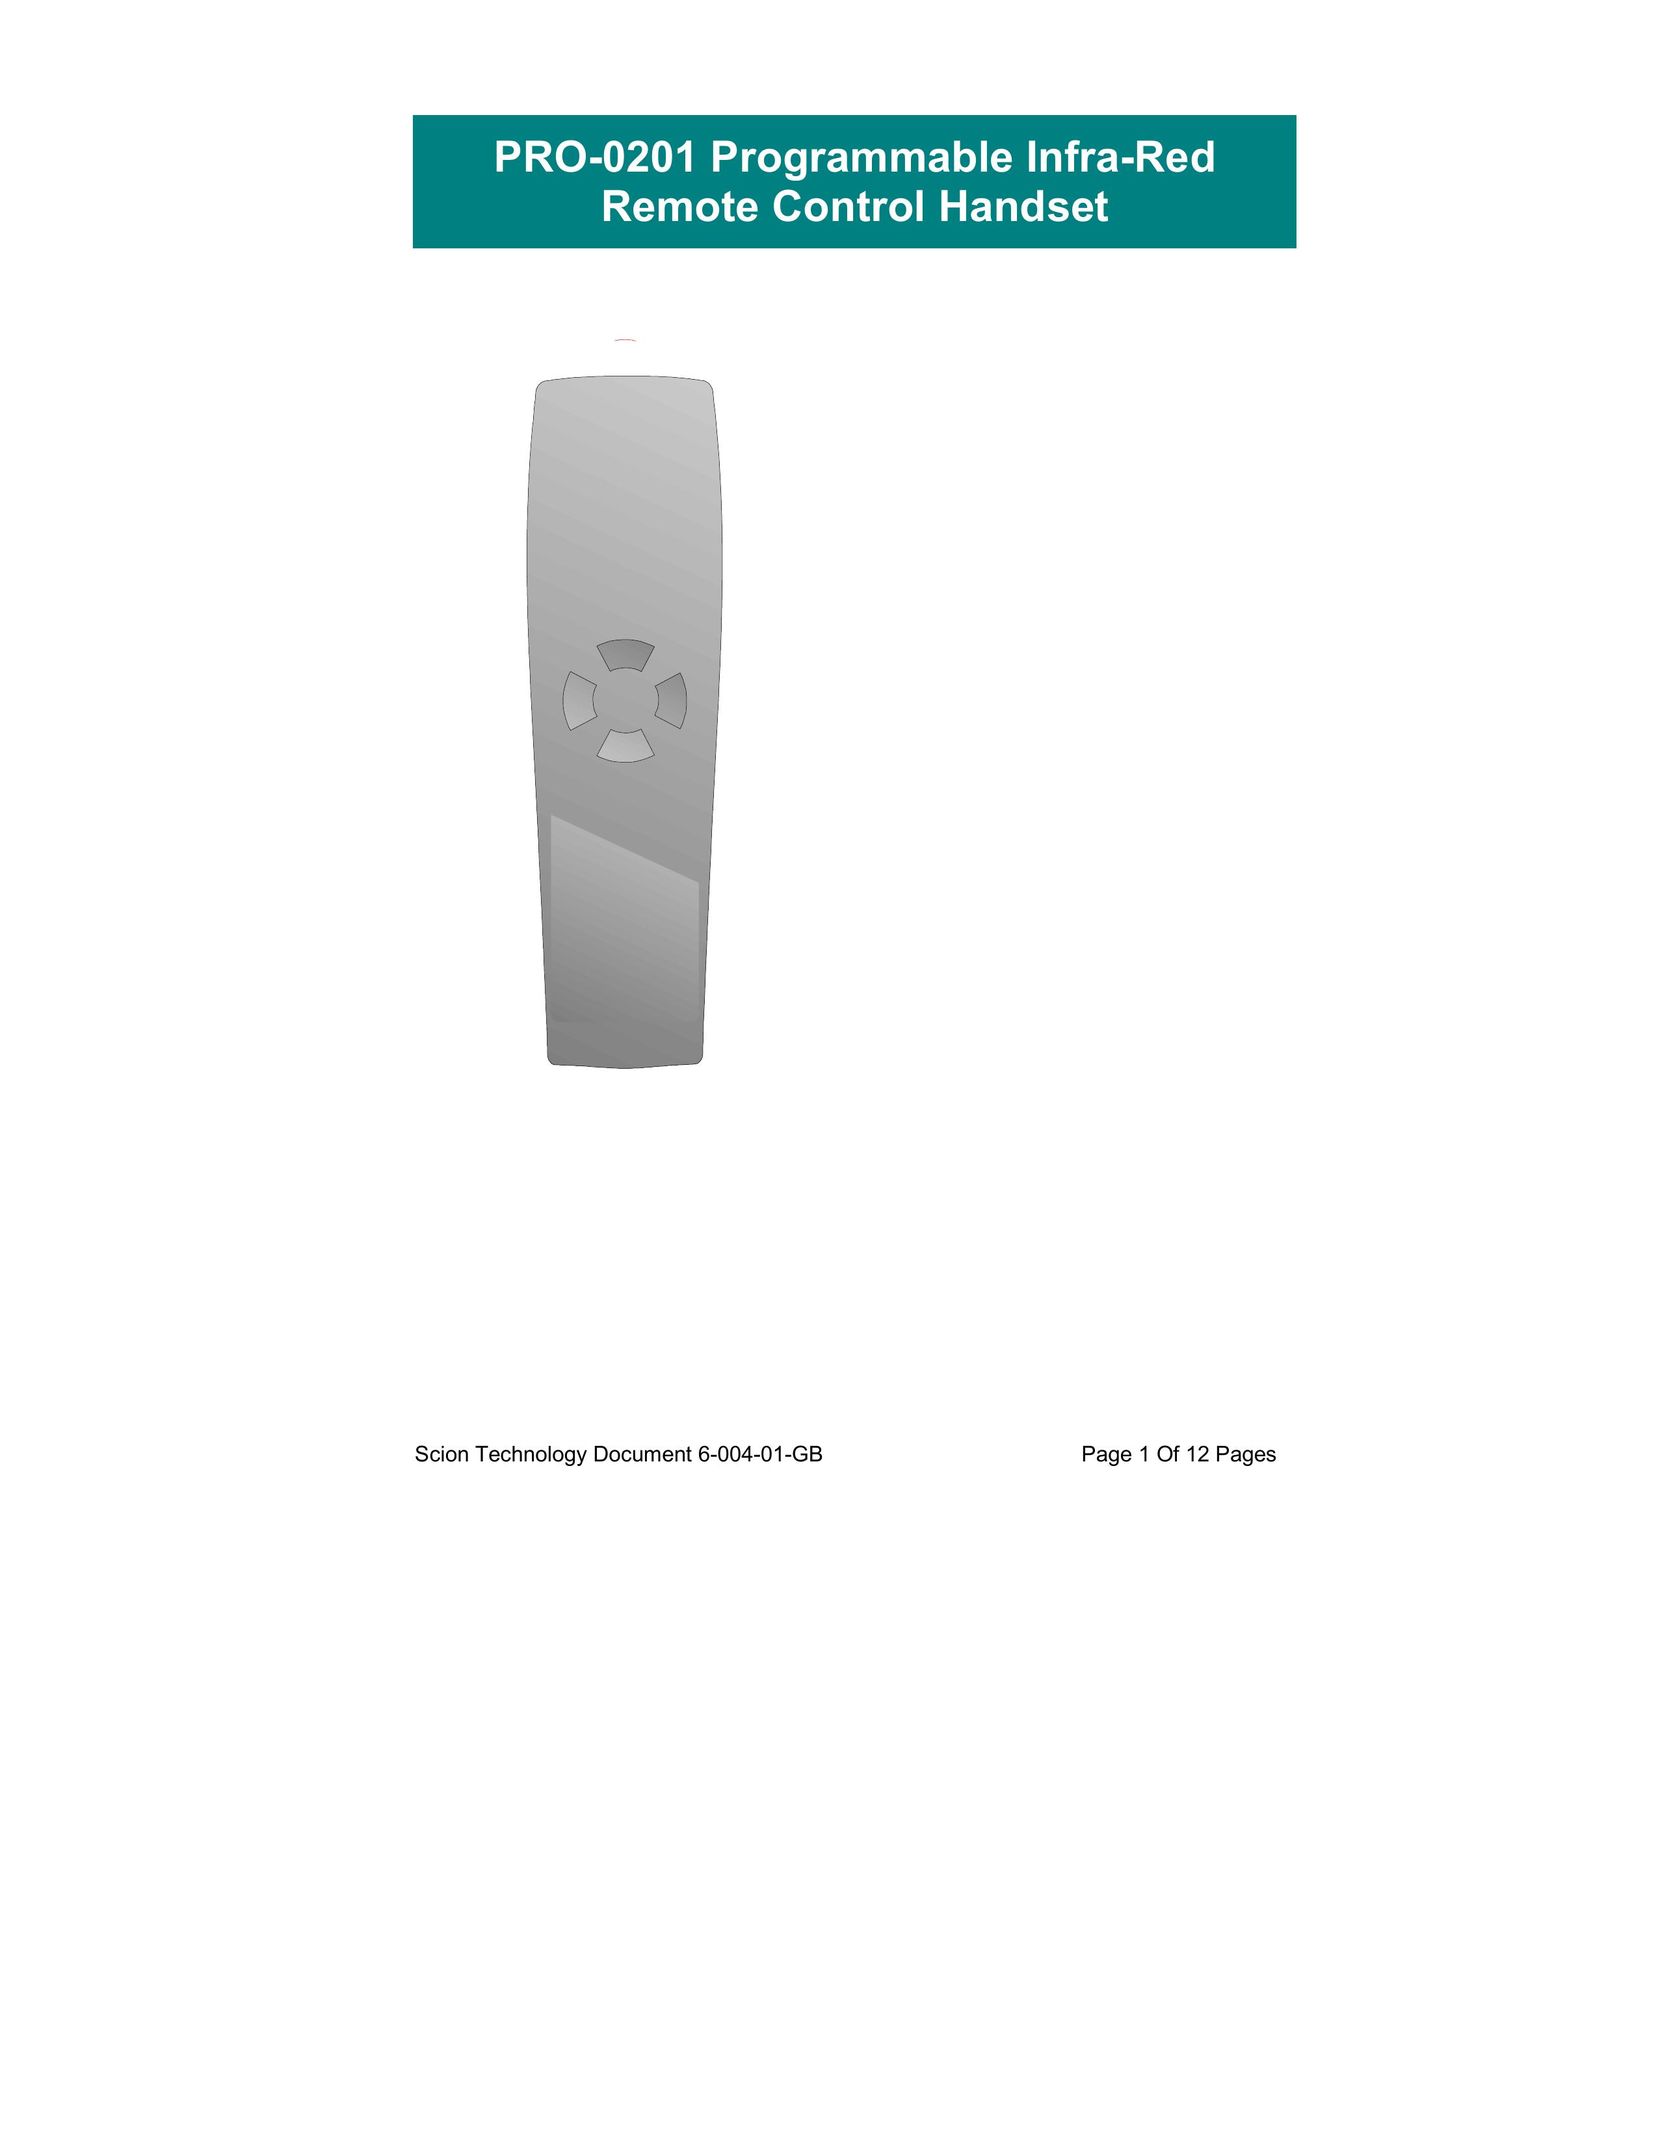 Scion PRO-0201 Universal Remote User Manual